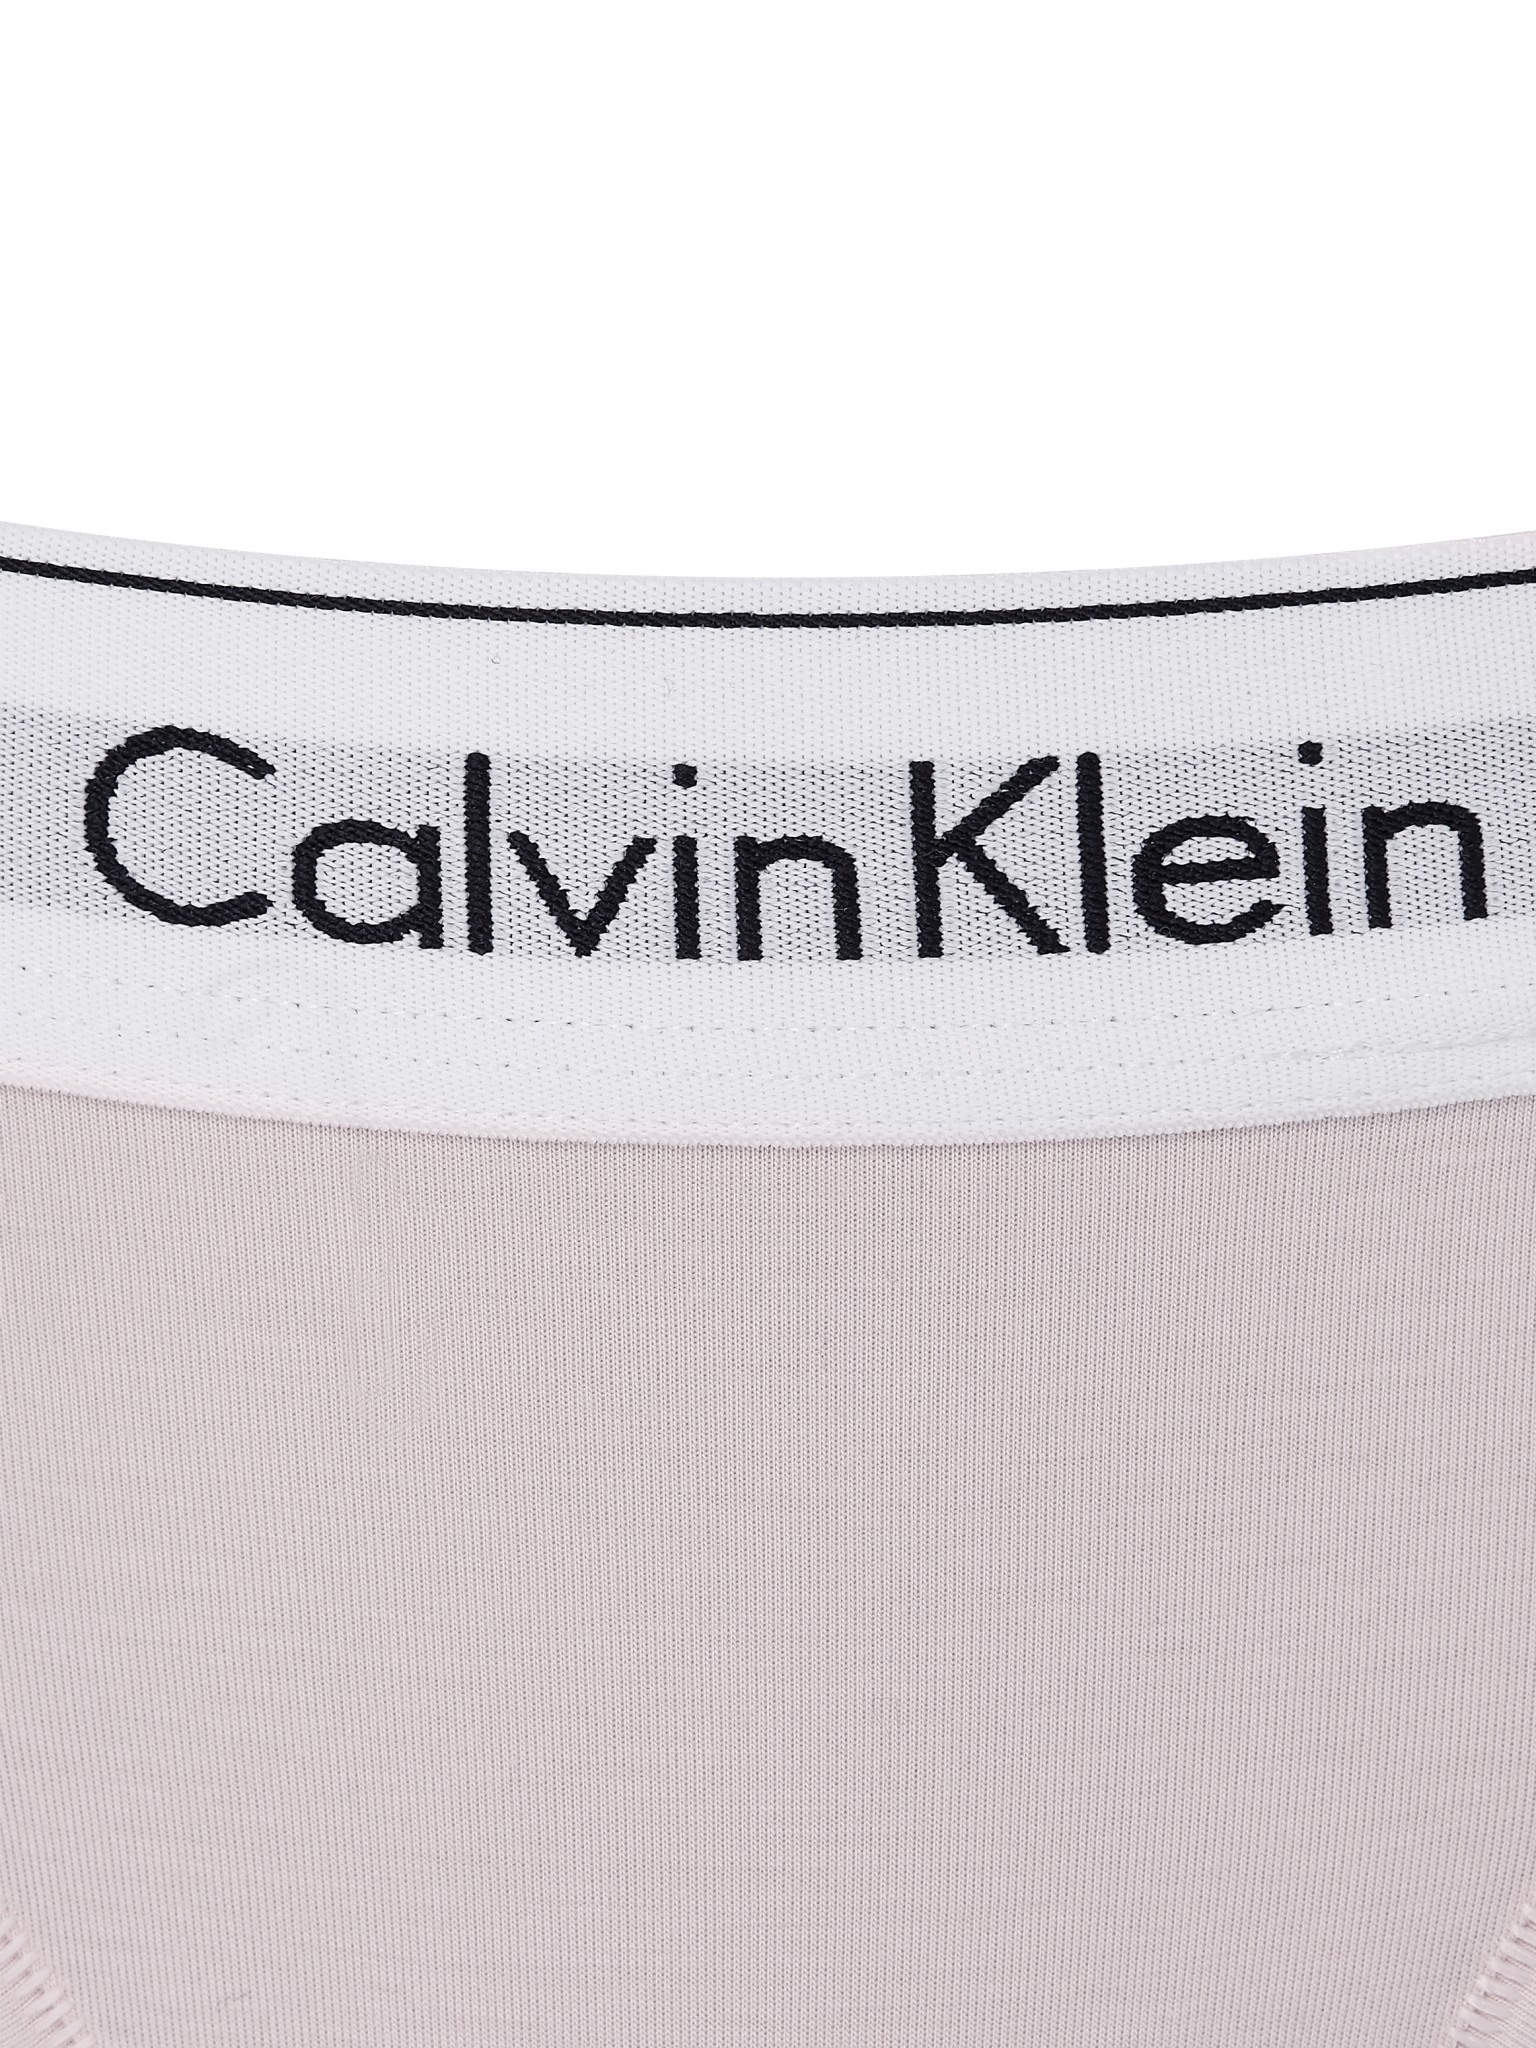 CALVIN KLEIN STRING - MODERN COTTON 10558501